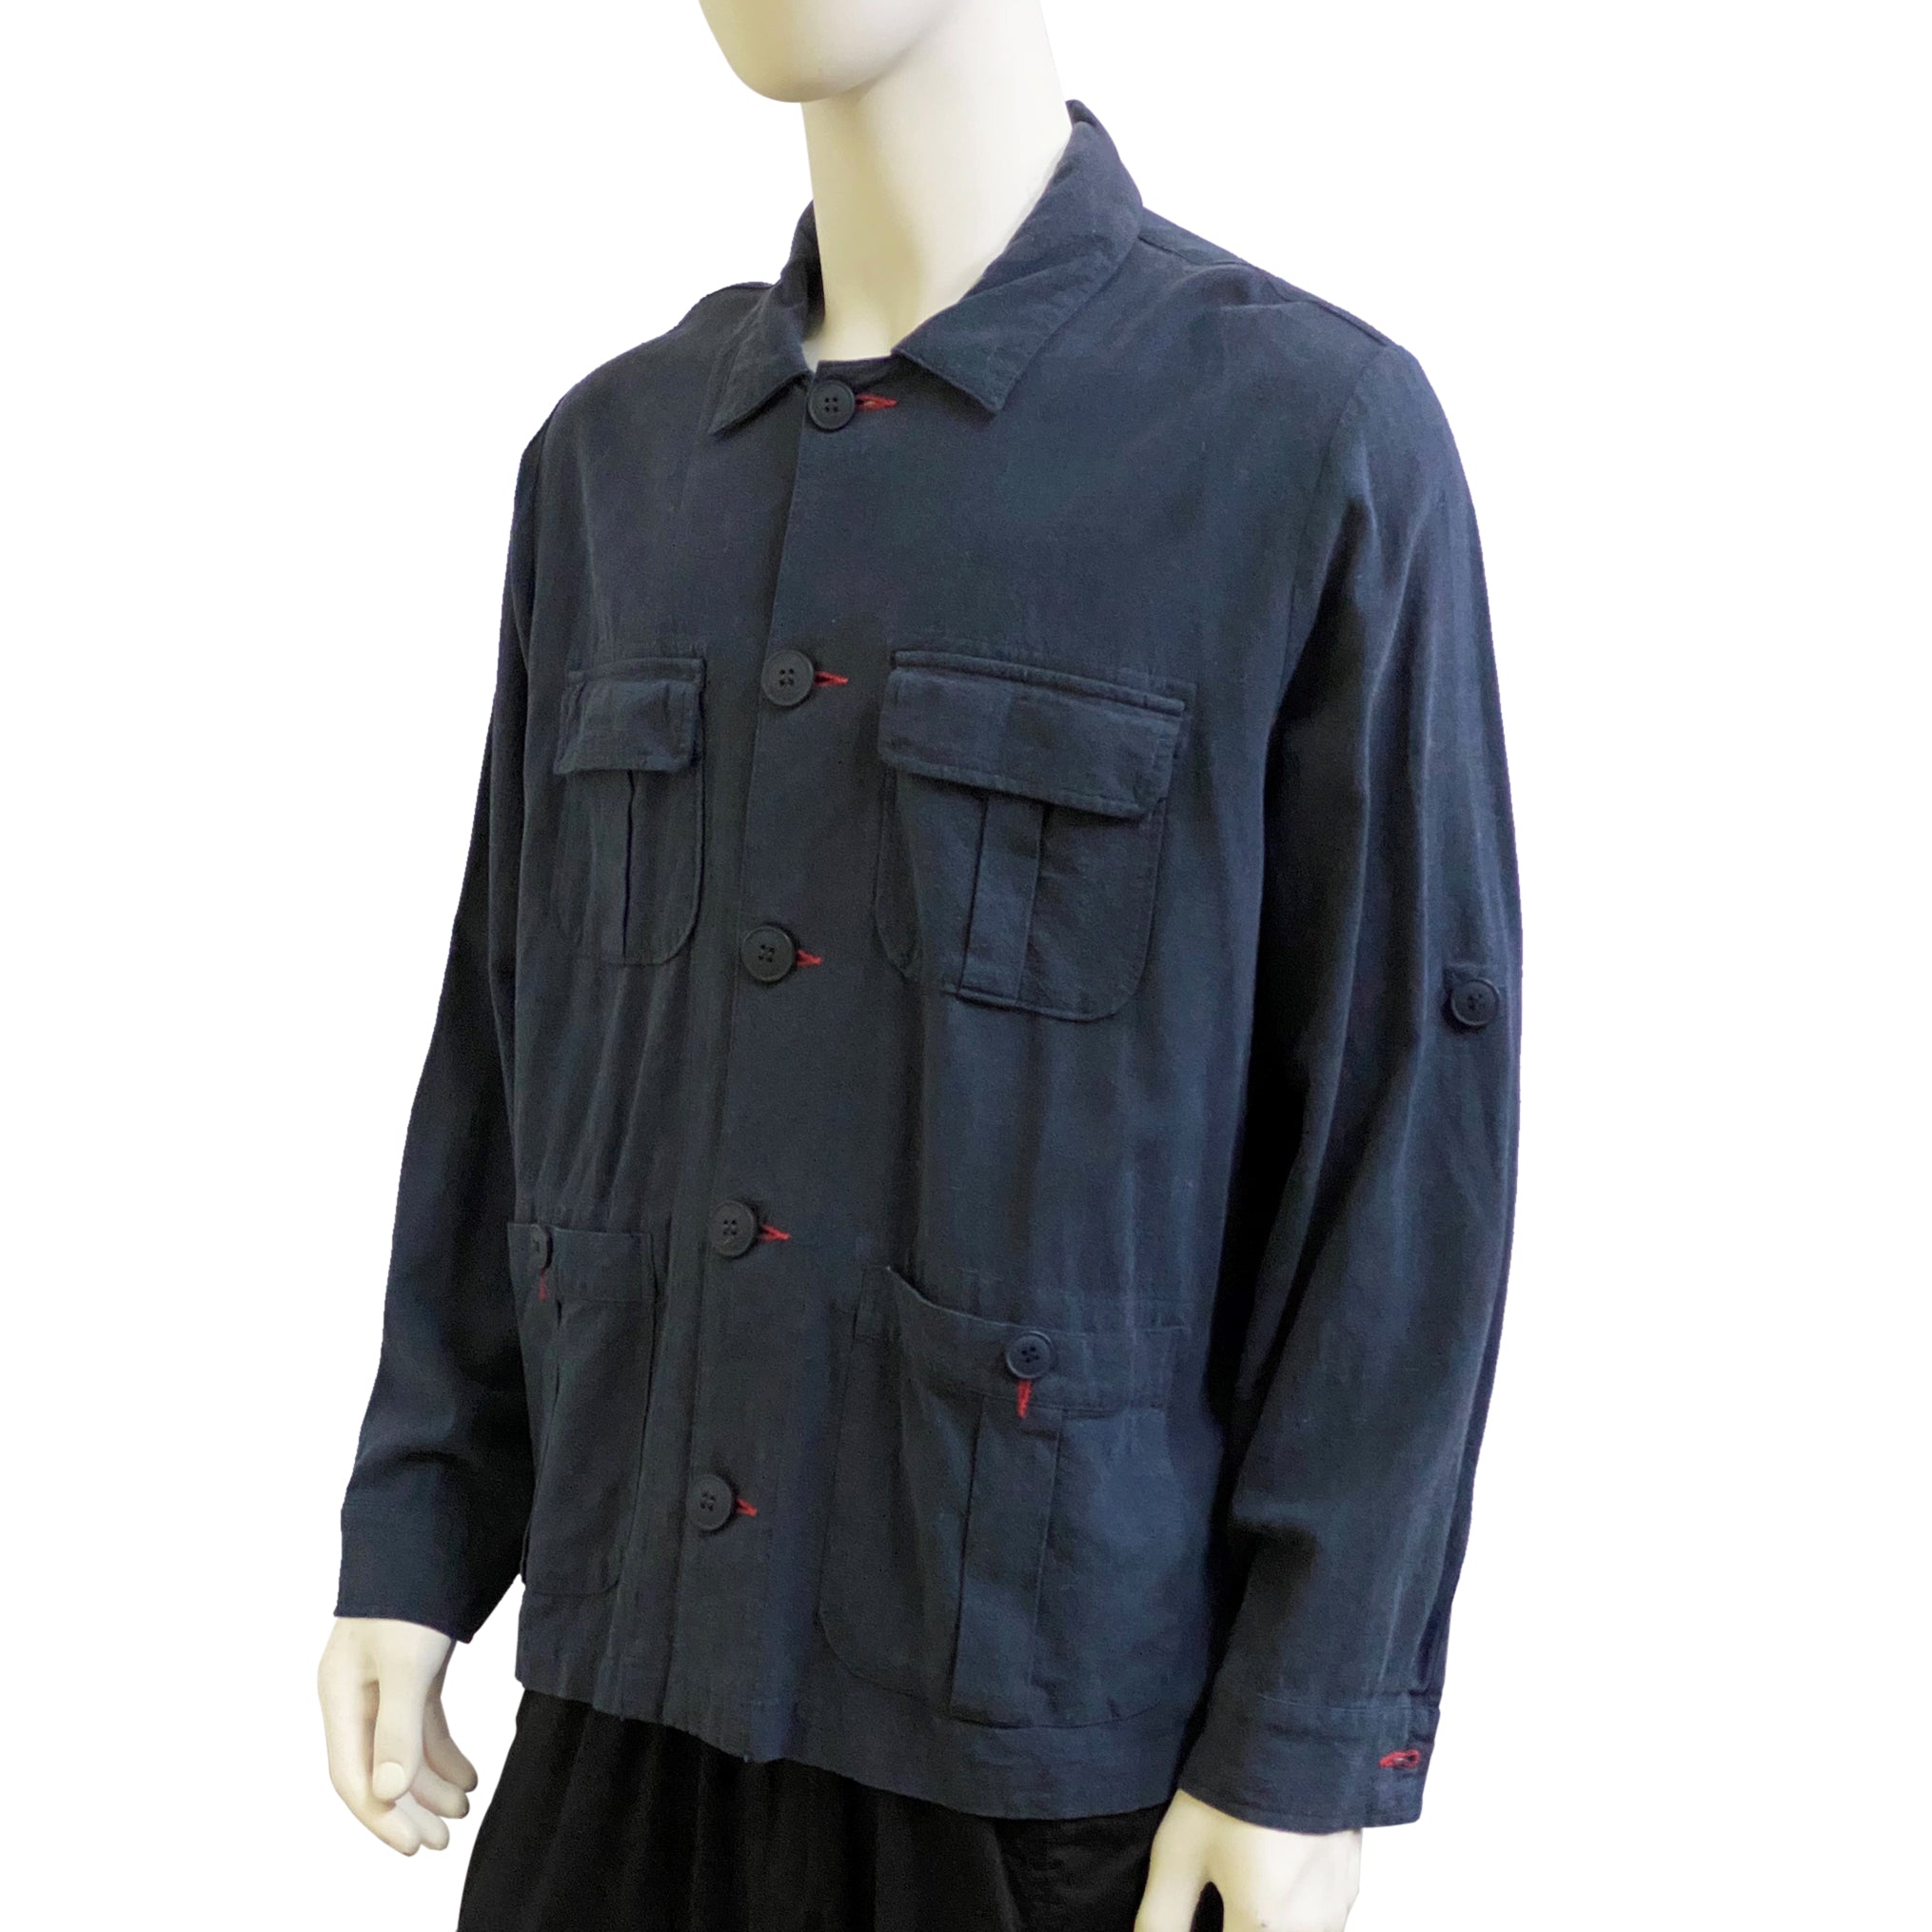 Four Pockets Mao Jacket, Navy